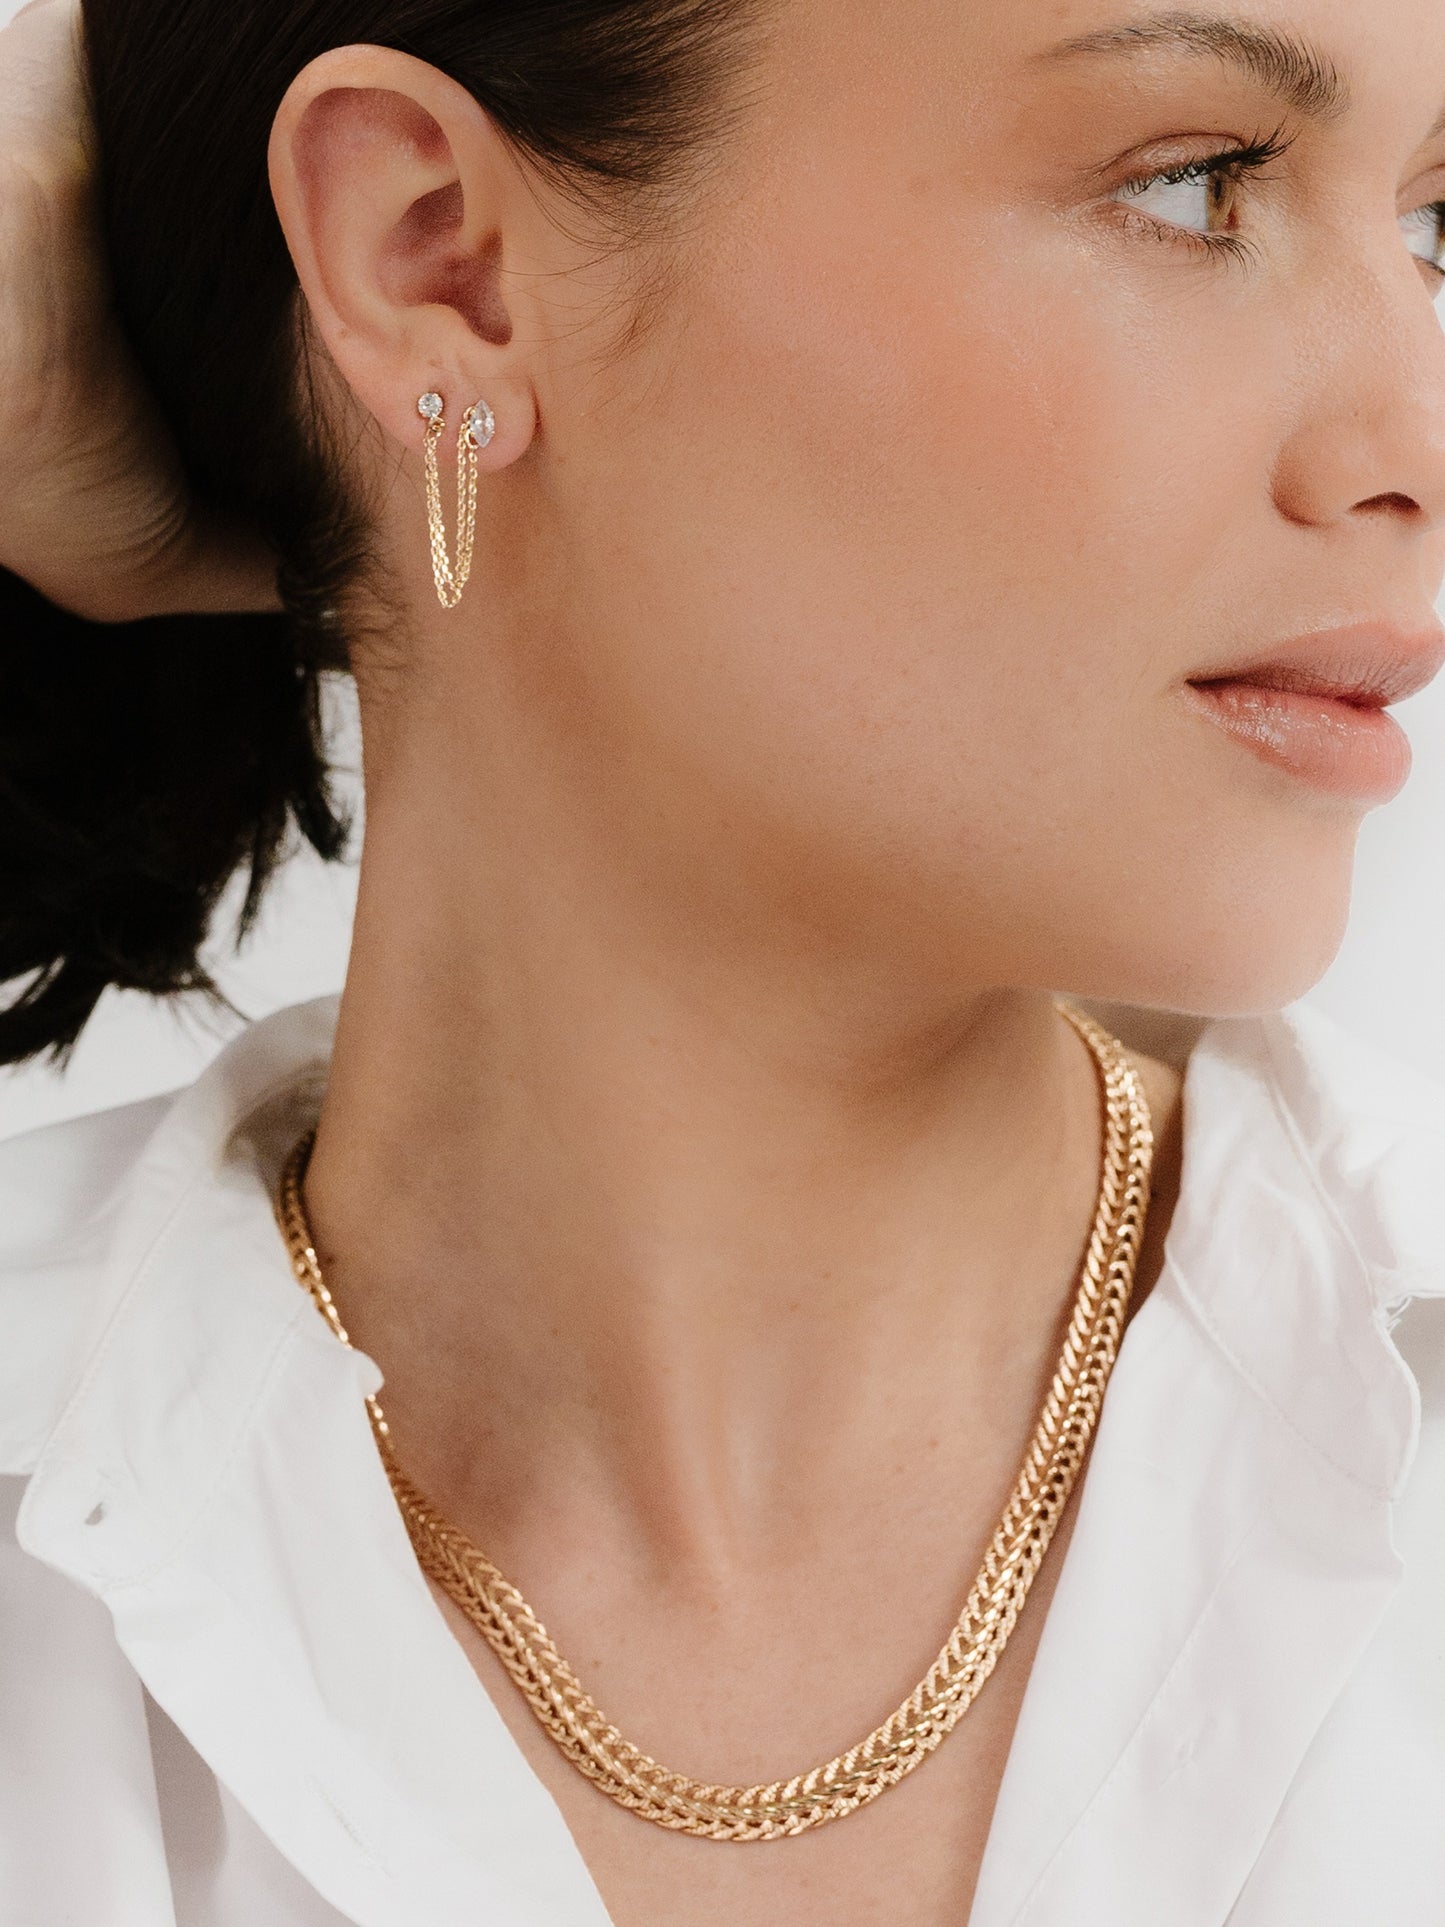 Double Piercing Chain Dangle Earrings in gold model view